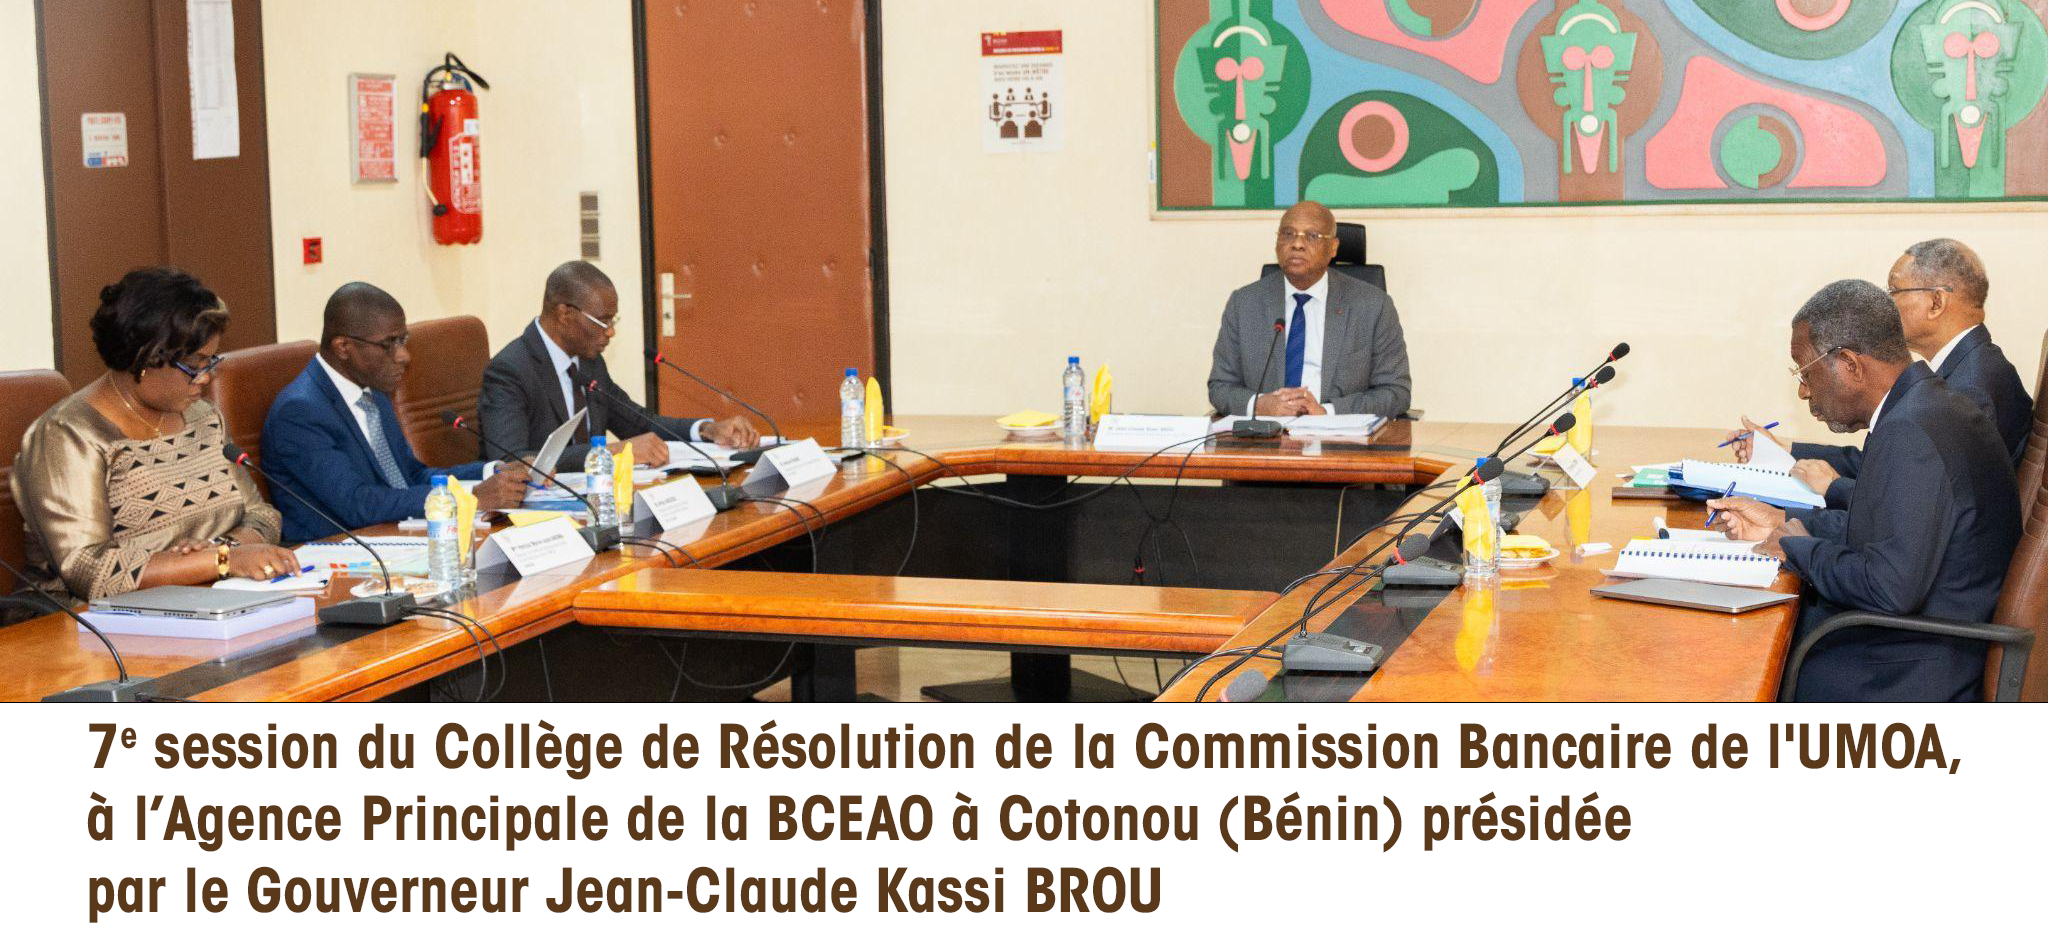 Le Collège de Résolution de la Commission Bancaire de l’UMOA a tenu sa 7e session ce mardi 19 décembre 2023, dans les locaux de l’Agence Principale de la Banque Centrale des Etats de l'Afrique de l’Ouest (BCEAO) à Cotonou (Bénin), sous la présidence de Monsieur Jean-Claude Kassi BROU, Gouverneur de la BCEAO.  Au terme des délibérations, les membres du Collège ont examiné et adopté les projets de plans de résolution d’établissements bancaires d’importance systémique (EBIS).